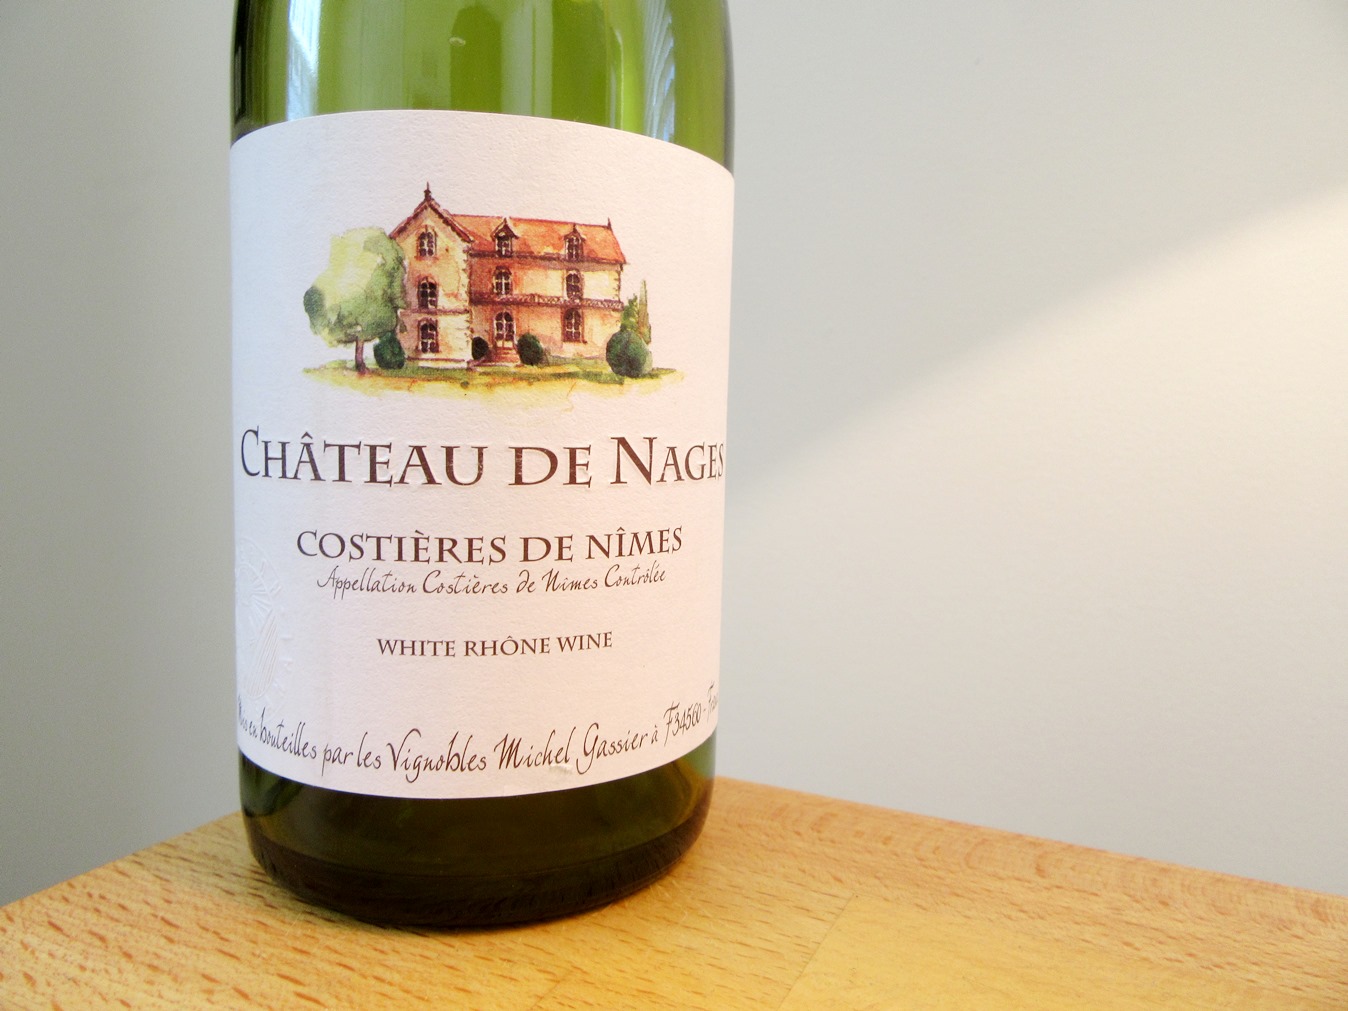 Vignobles, Michel Gassier, Chateau de Nages, Reserve White 2011, Costieres de Nimes, Rhône, France, Wine Casual